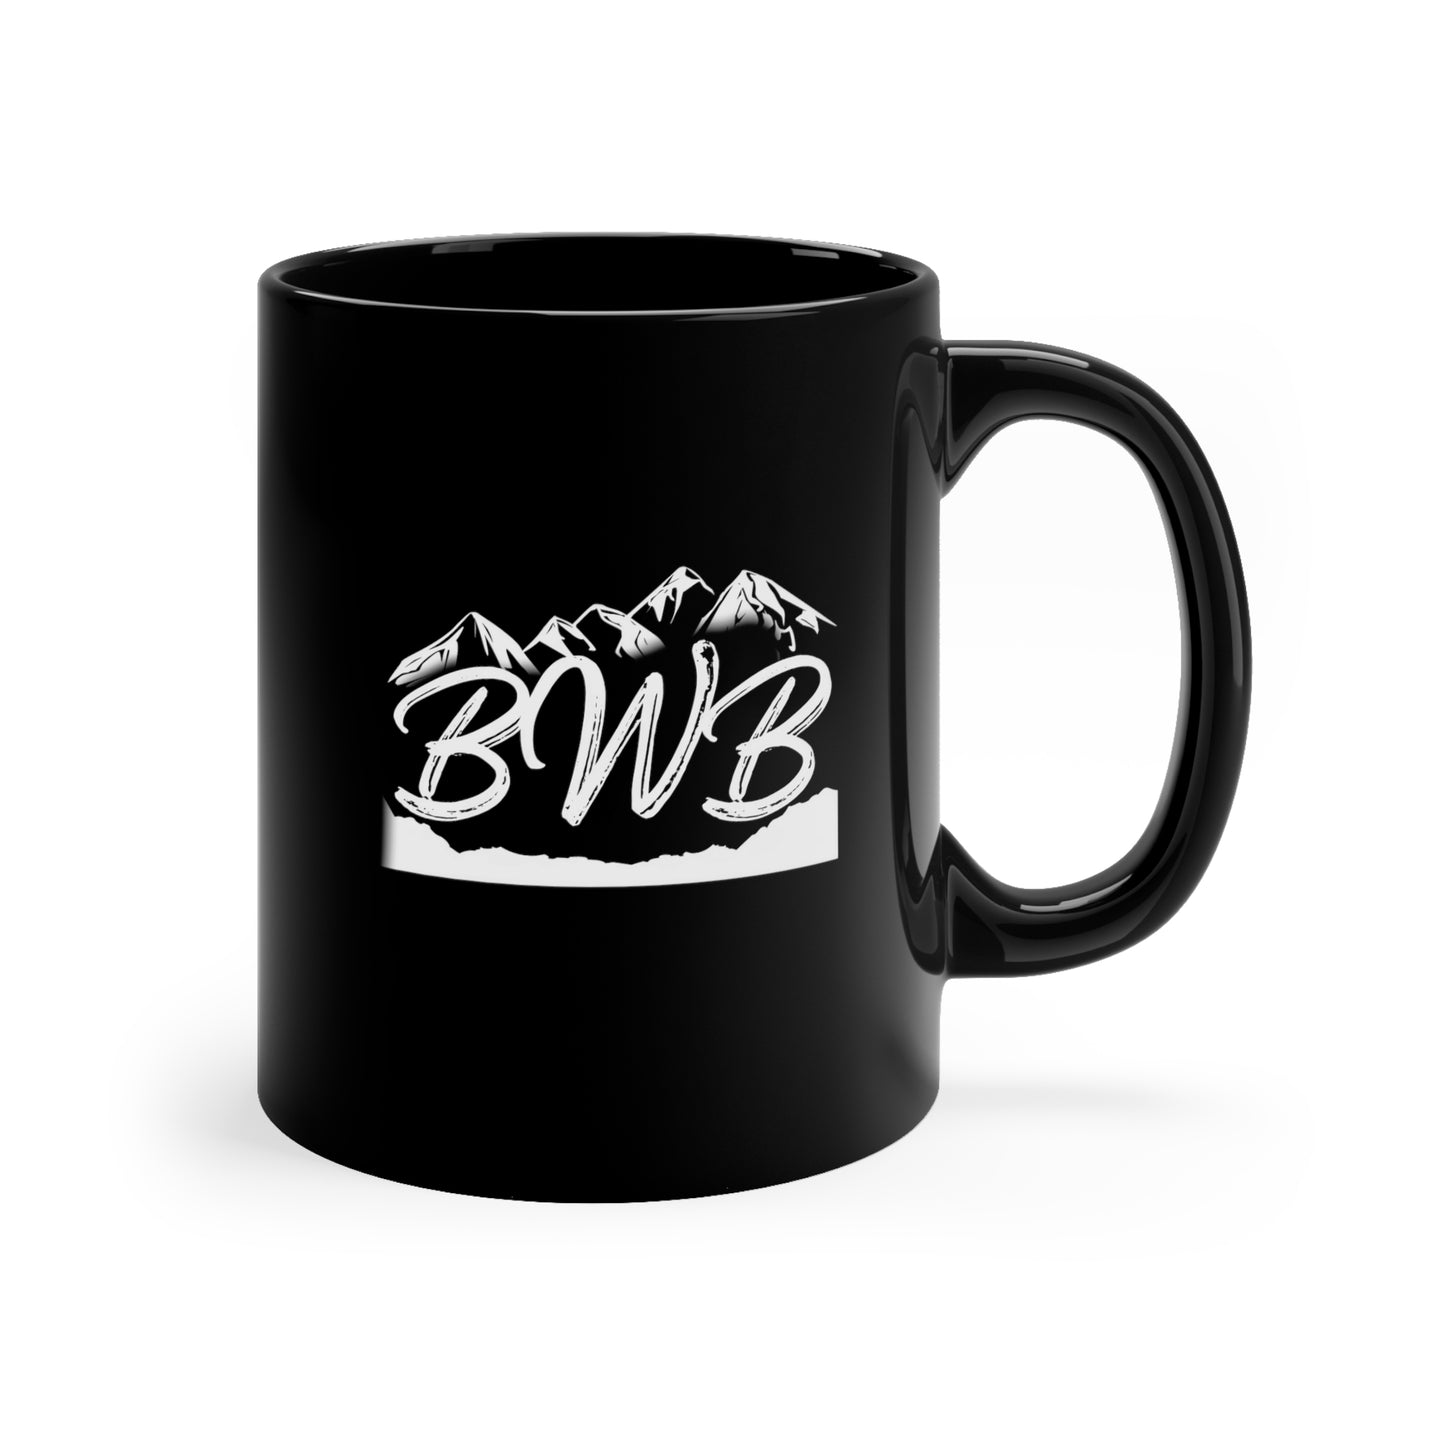 Big Buck Mug - Backwoods Branding Co.